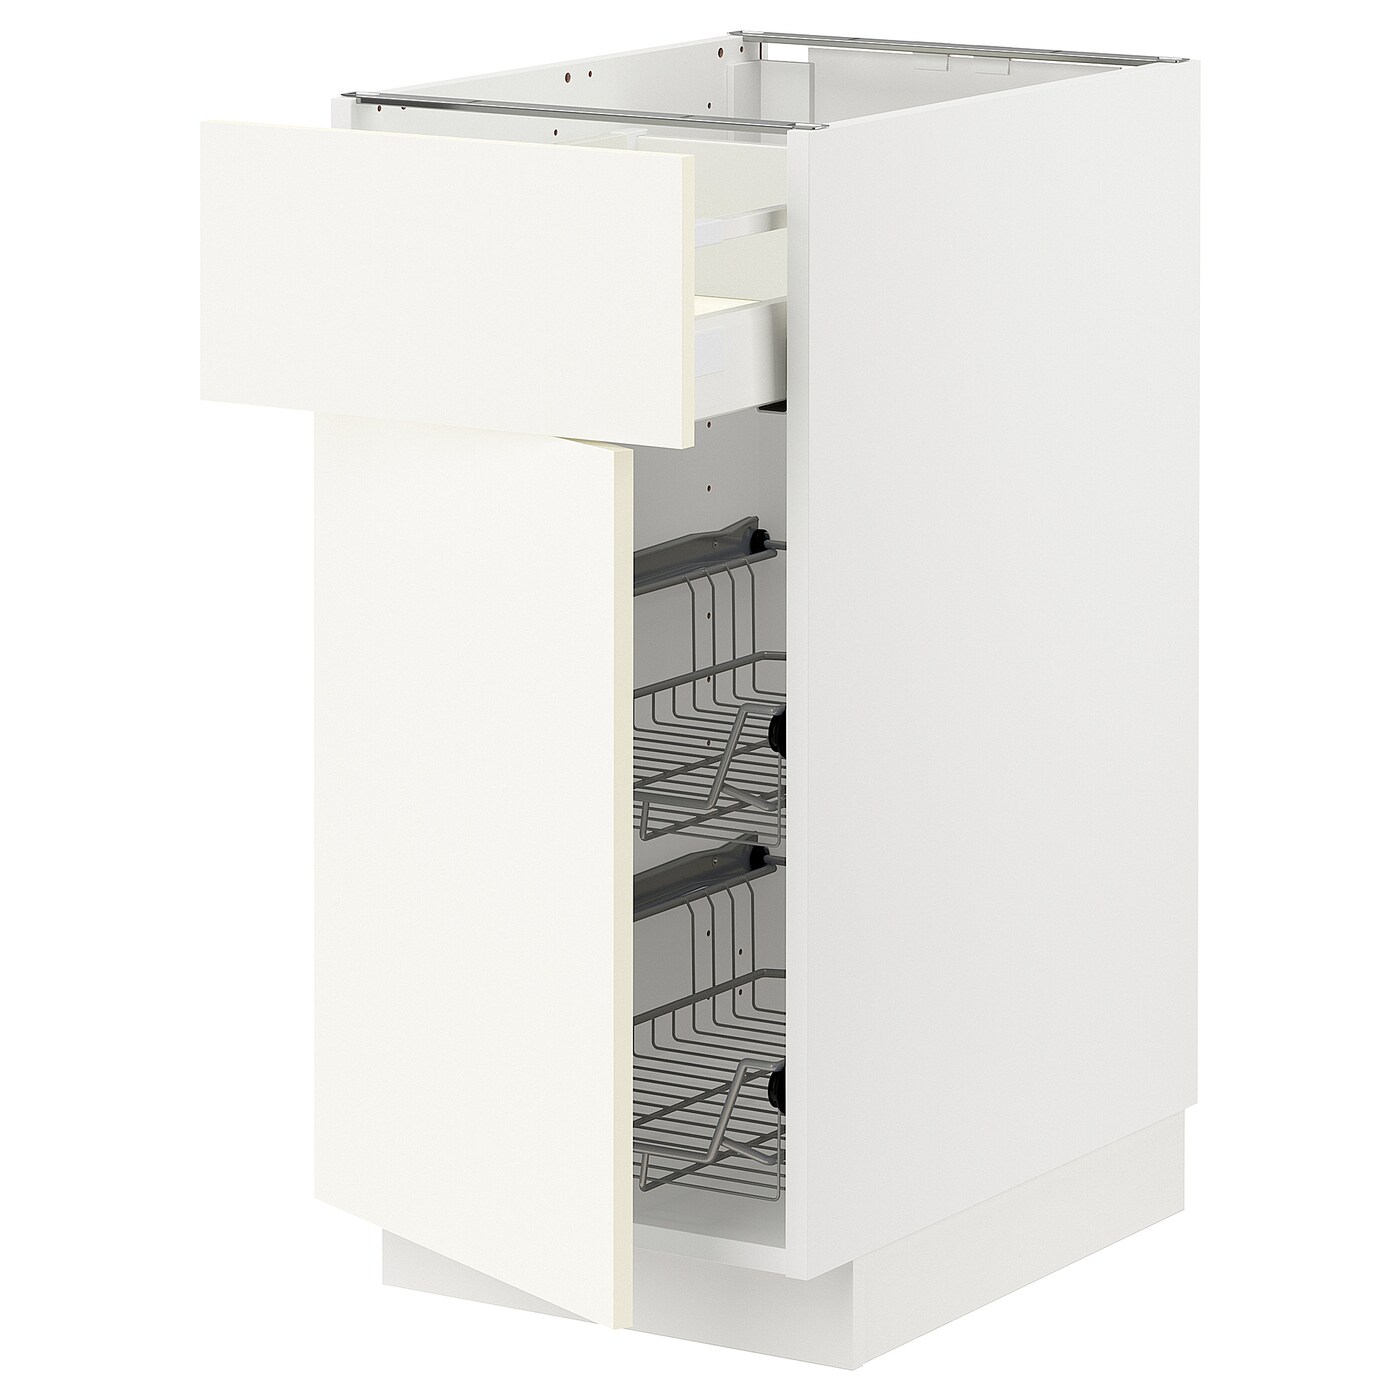 Напольный шкаф - METOD / MAXIMERA IKEA/ МЕТОД/ МАКСИМЕРА ИКЕА,  40х88 см, белый